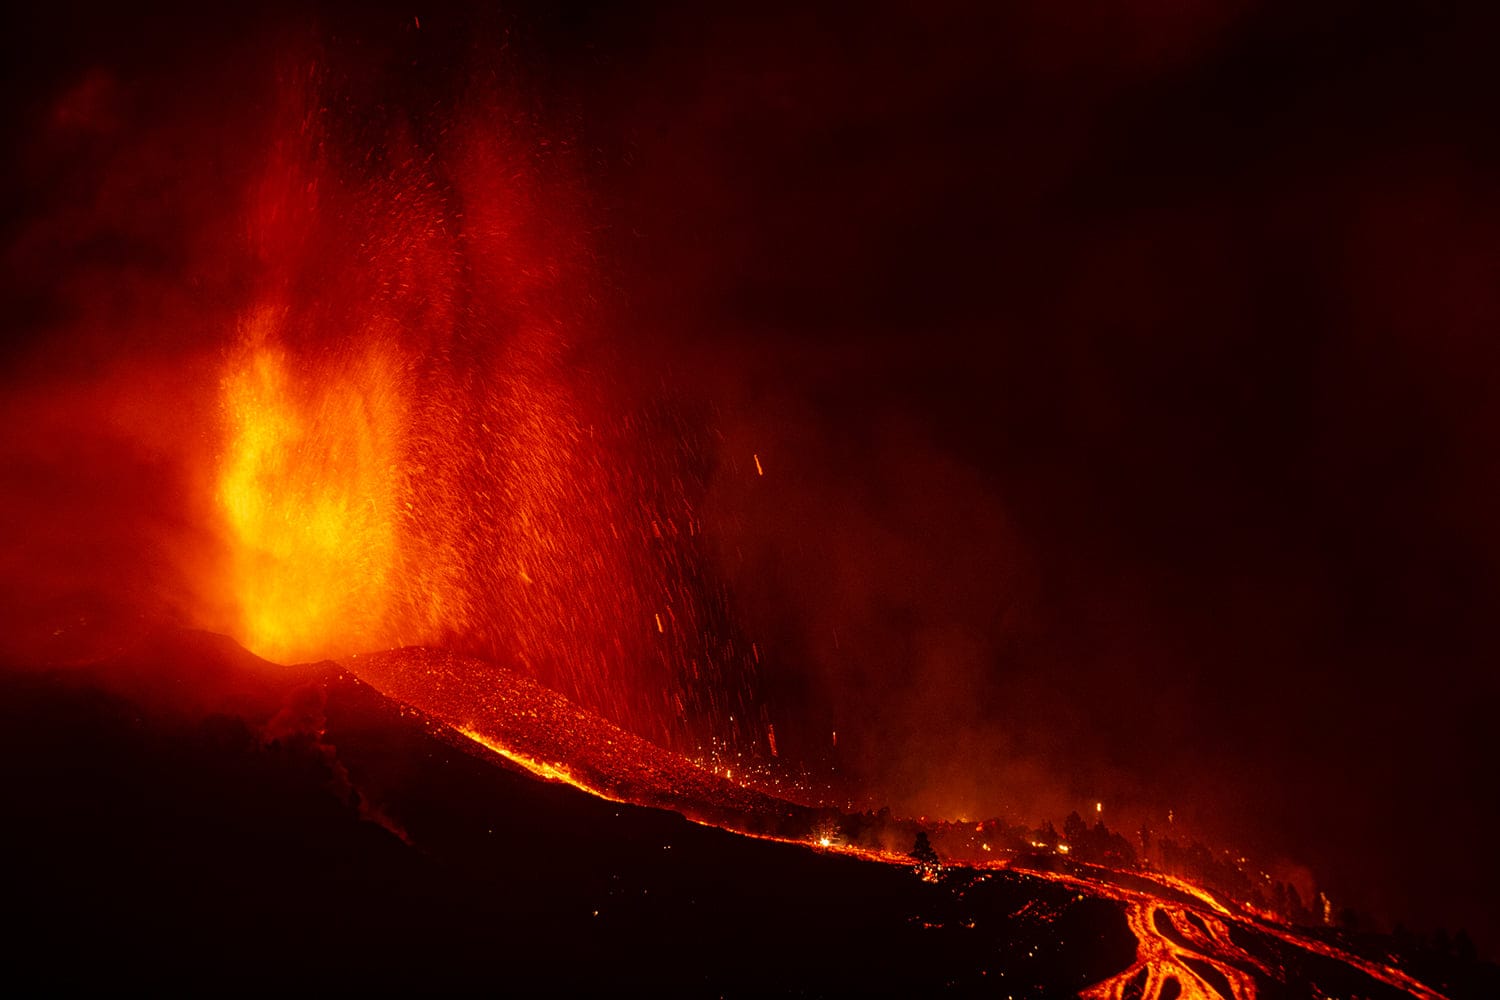 Dünnflüssige Lava: Weil der Vulkan auf La Palma vom hawaiianischen Typ ist, kann die glühende Fracht gut austreten und fließen, es kommt nicht zu heftigen Explosionen.